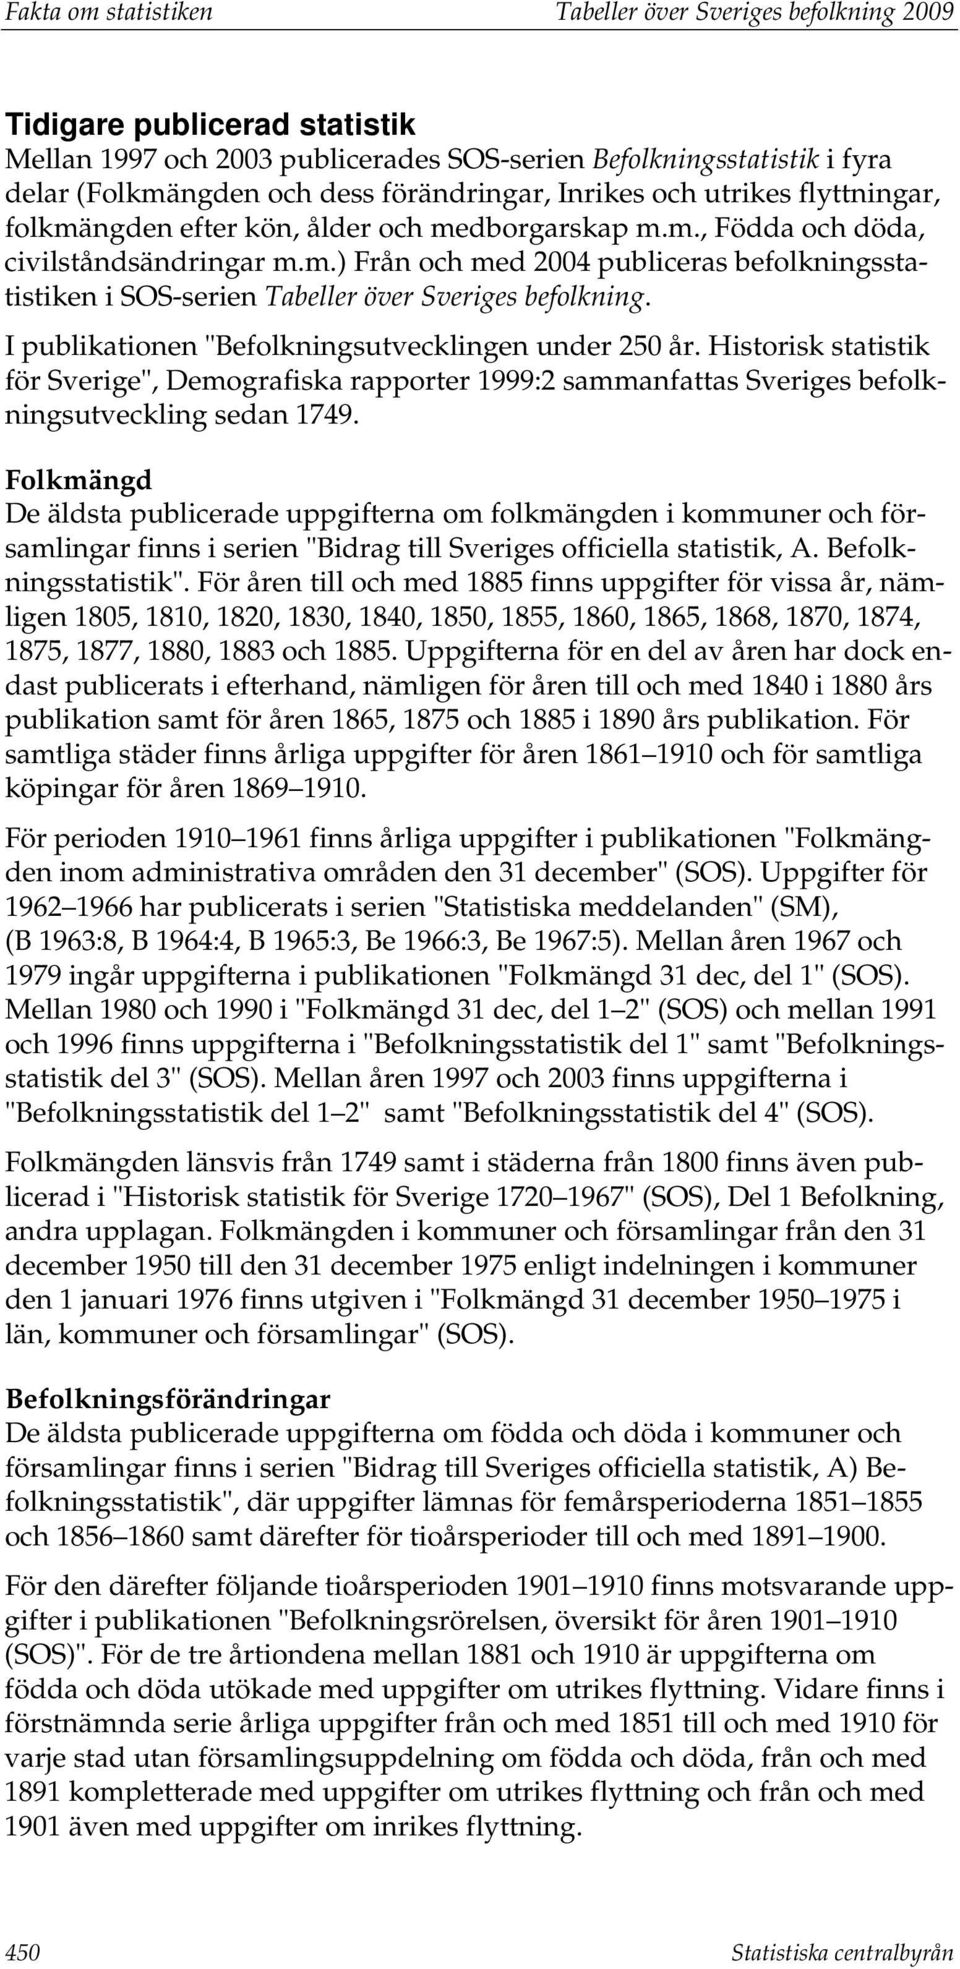 I publikationen "Befolkningsutvecklingen under 250 år. Historisk statistik för Sverige", Demografiska rapporter 1999:2 sammanfattas Sveriges befolkningsutveckling sedan 1749.